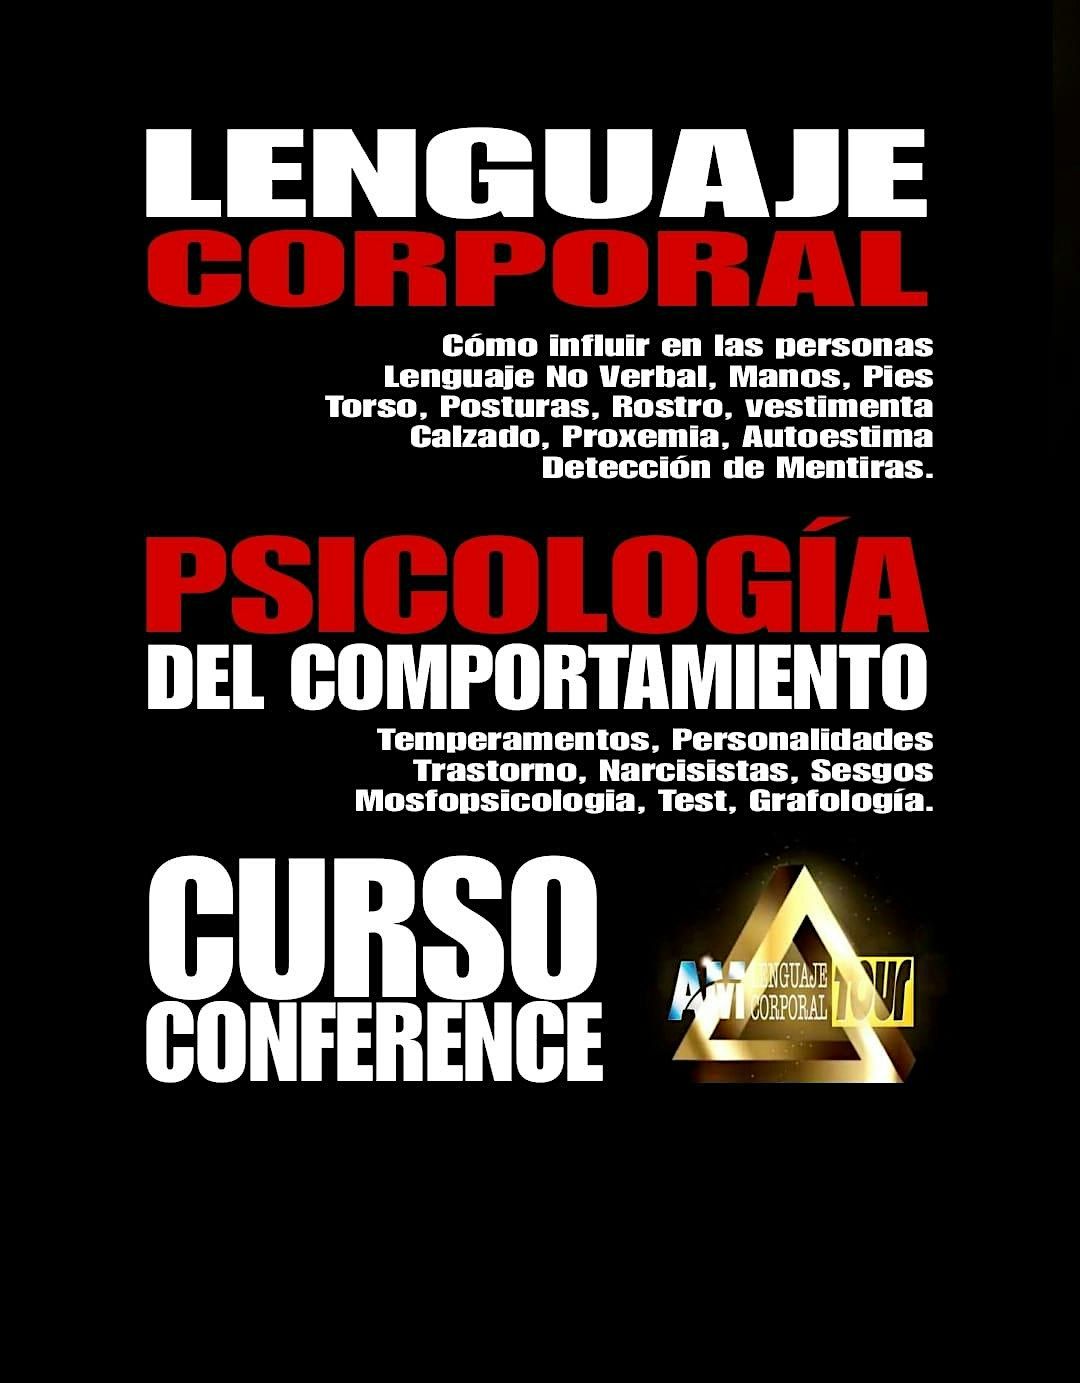 CONFERENCE PSICOLOGIA DEL COMPORTAMIENTO + LENGUAJE CORPORAL